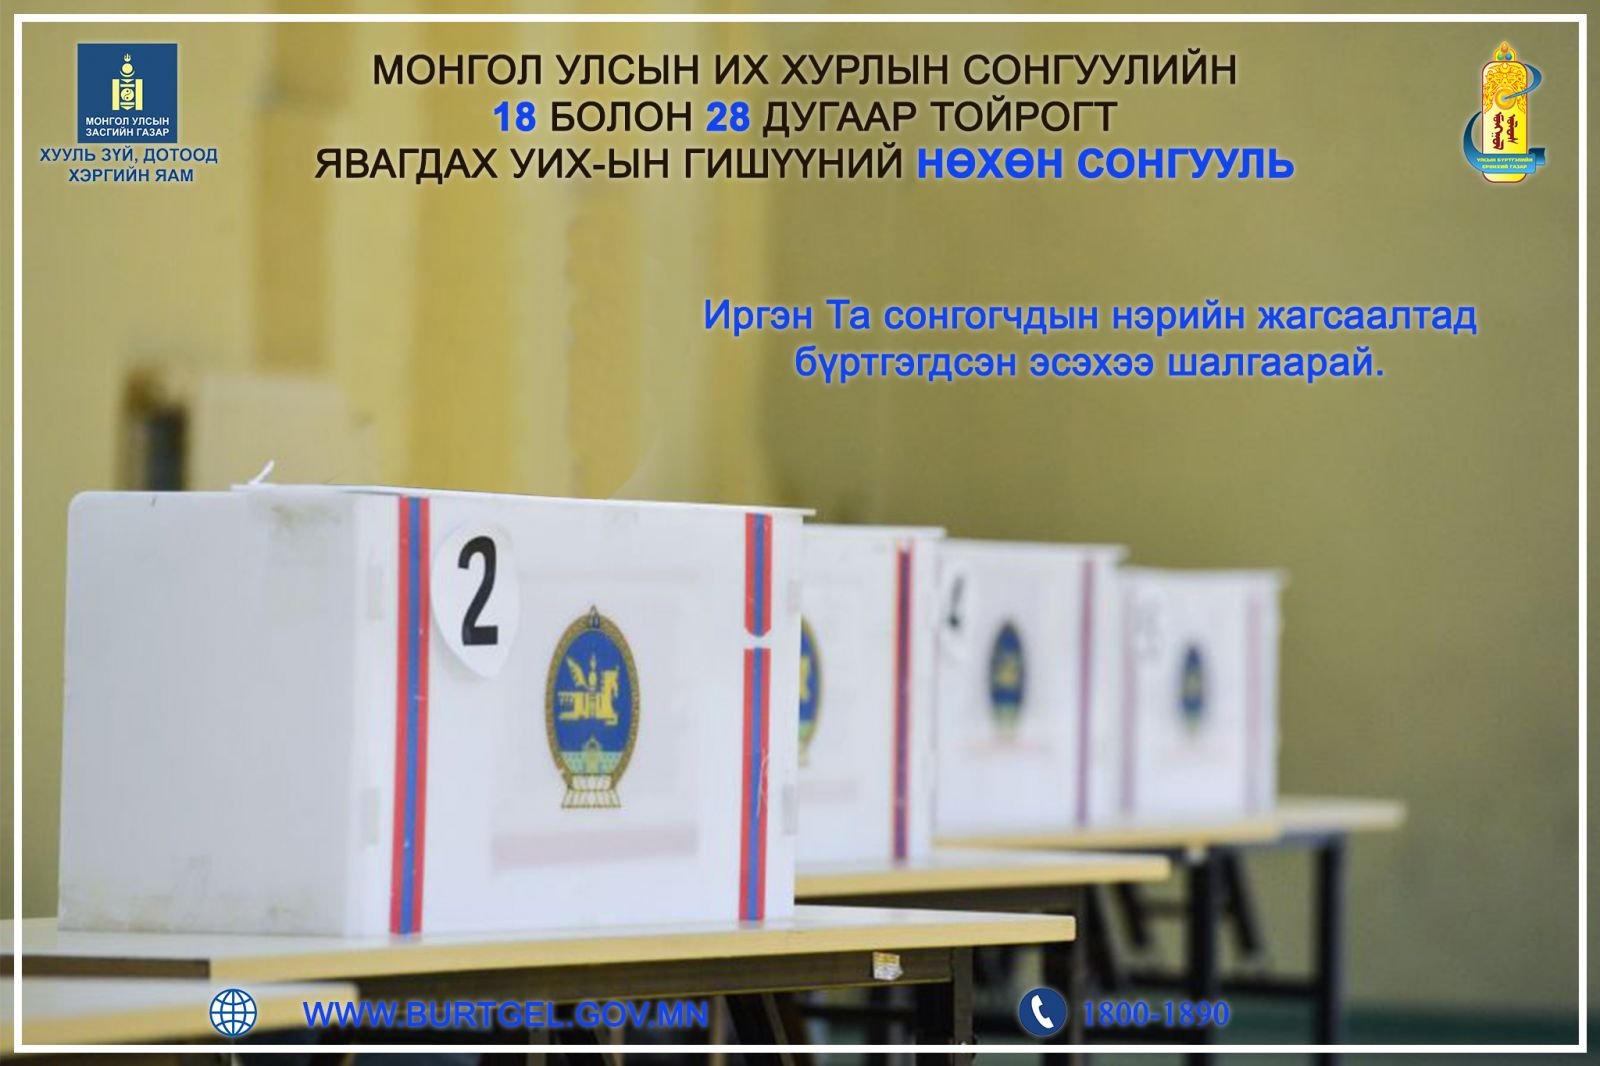 Монгол Улсын Их Хурлын сонгуулийн 18, 28 дугаар тойрогт явагдах Улсын Их Хурлын гишүүний нөхөн сонгууль